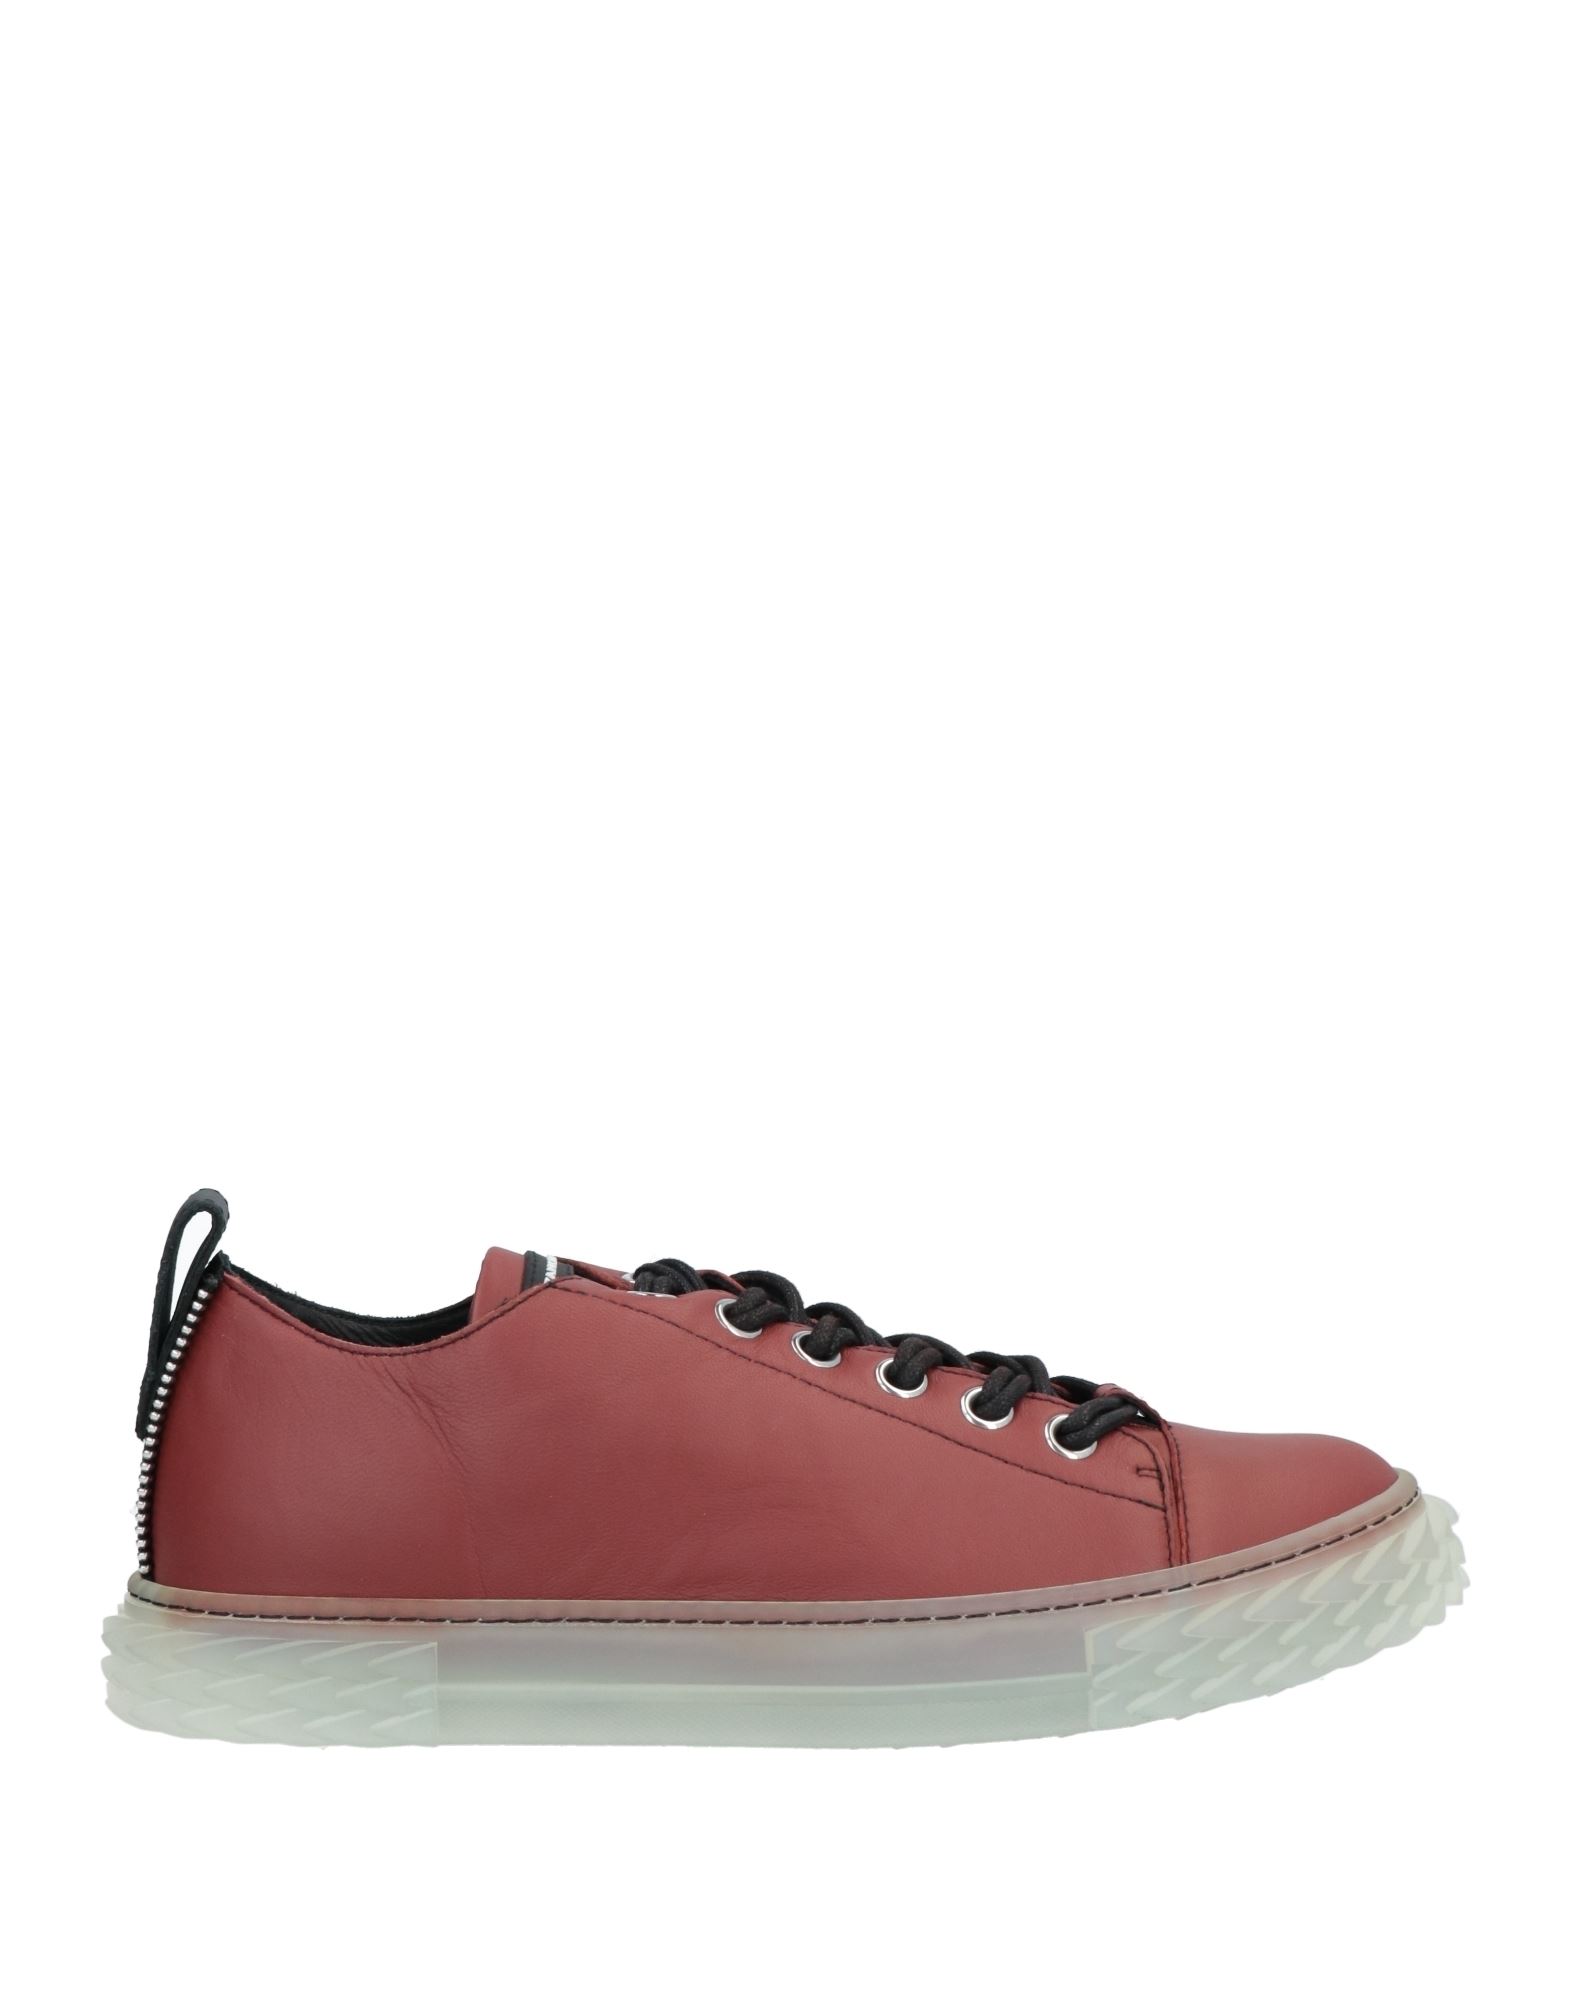 Giuseppe Zanotti Sneakers In Red